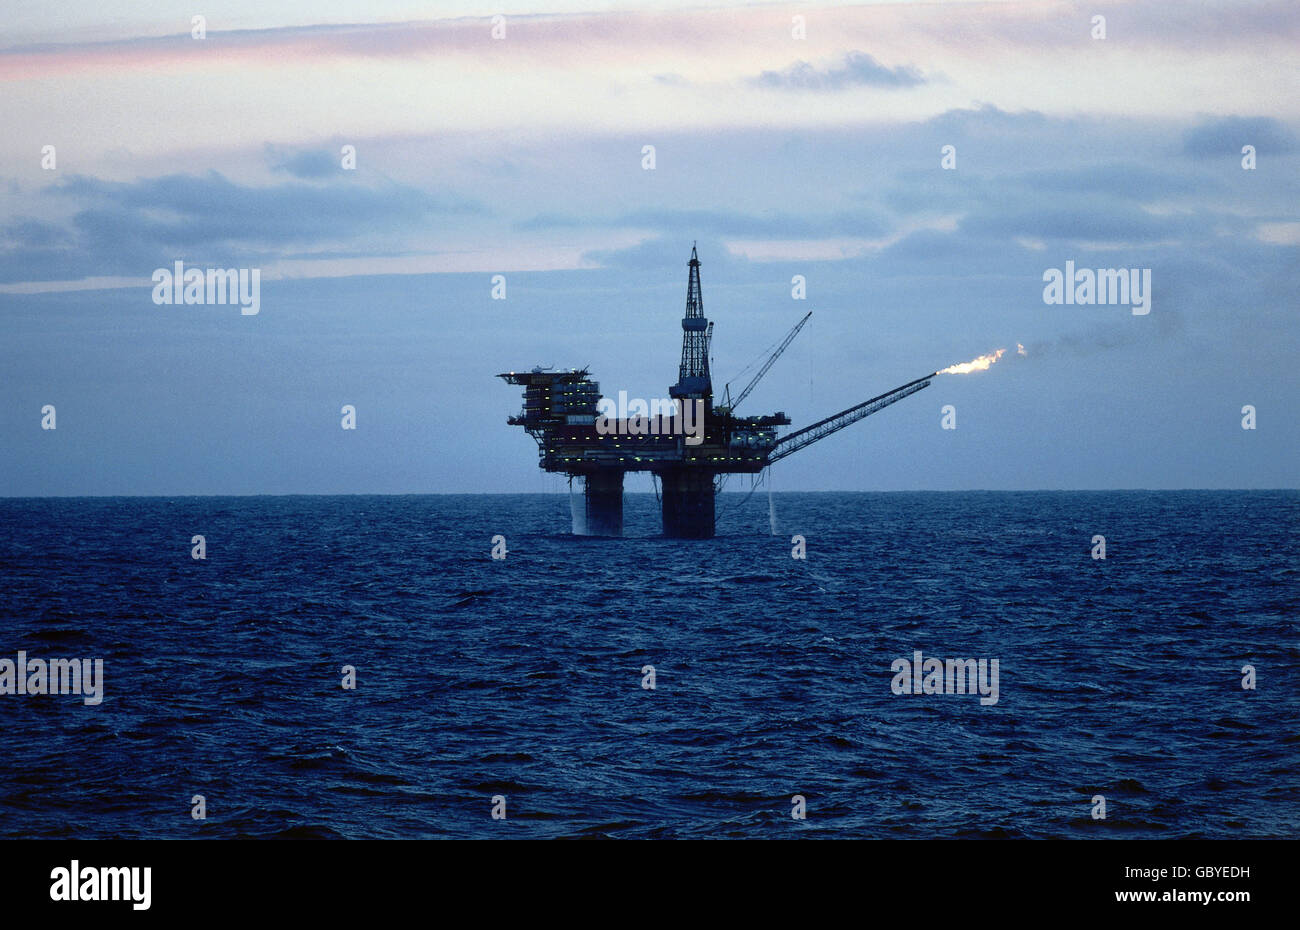 Industrie, pétrole, plate-forme de forage en mer, plate-forme de forage Brent B, nord-est de l'Écosse, 1978, droits additionnels-Clearences-non disponible Banque D'Images